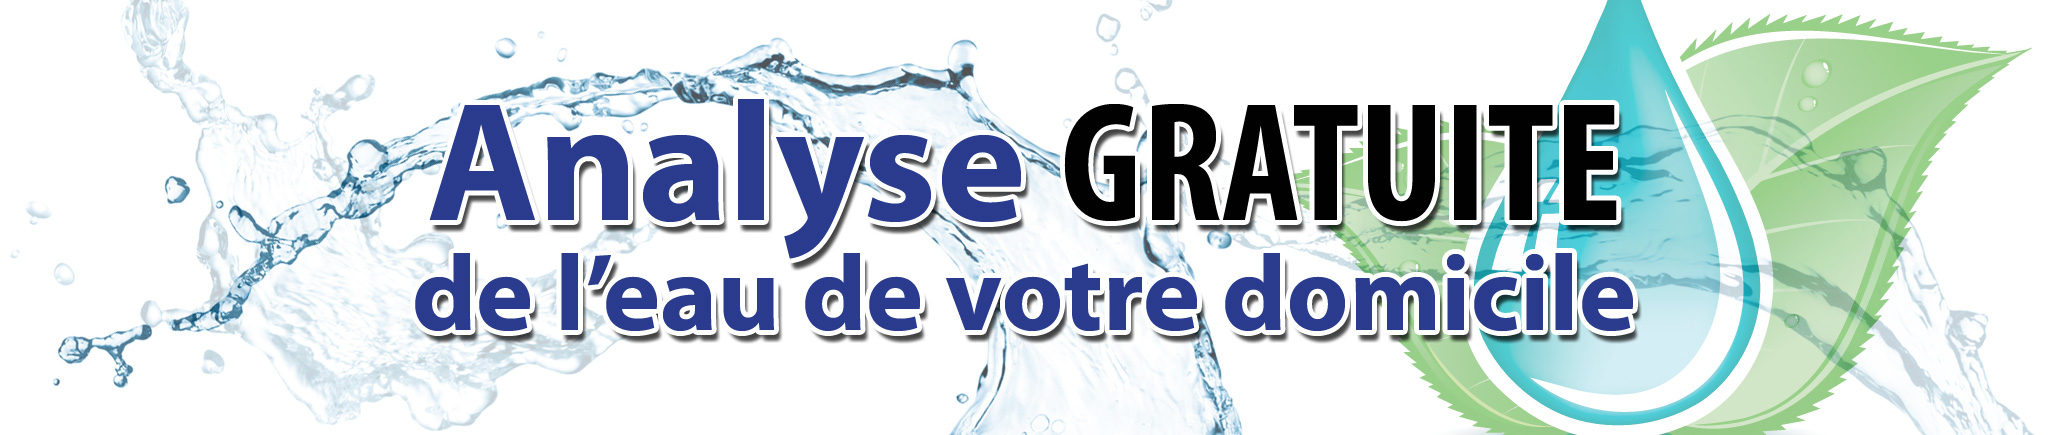 Analyse gratuite de l'eau de votre domicile dans les régions de Glengarry et de Prescott-Russell ainsi que dans tout Cumberland et les régions avoisinantes-Analyse d'eau Ottawa